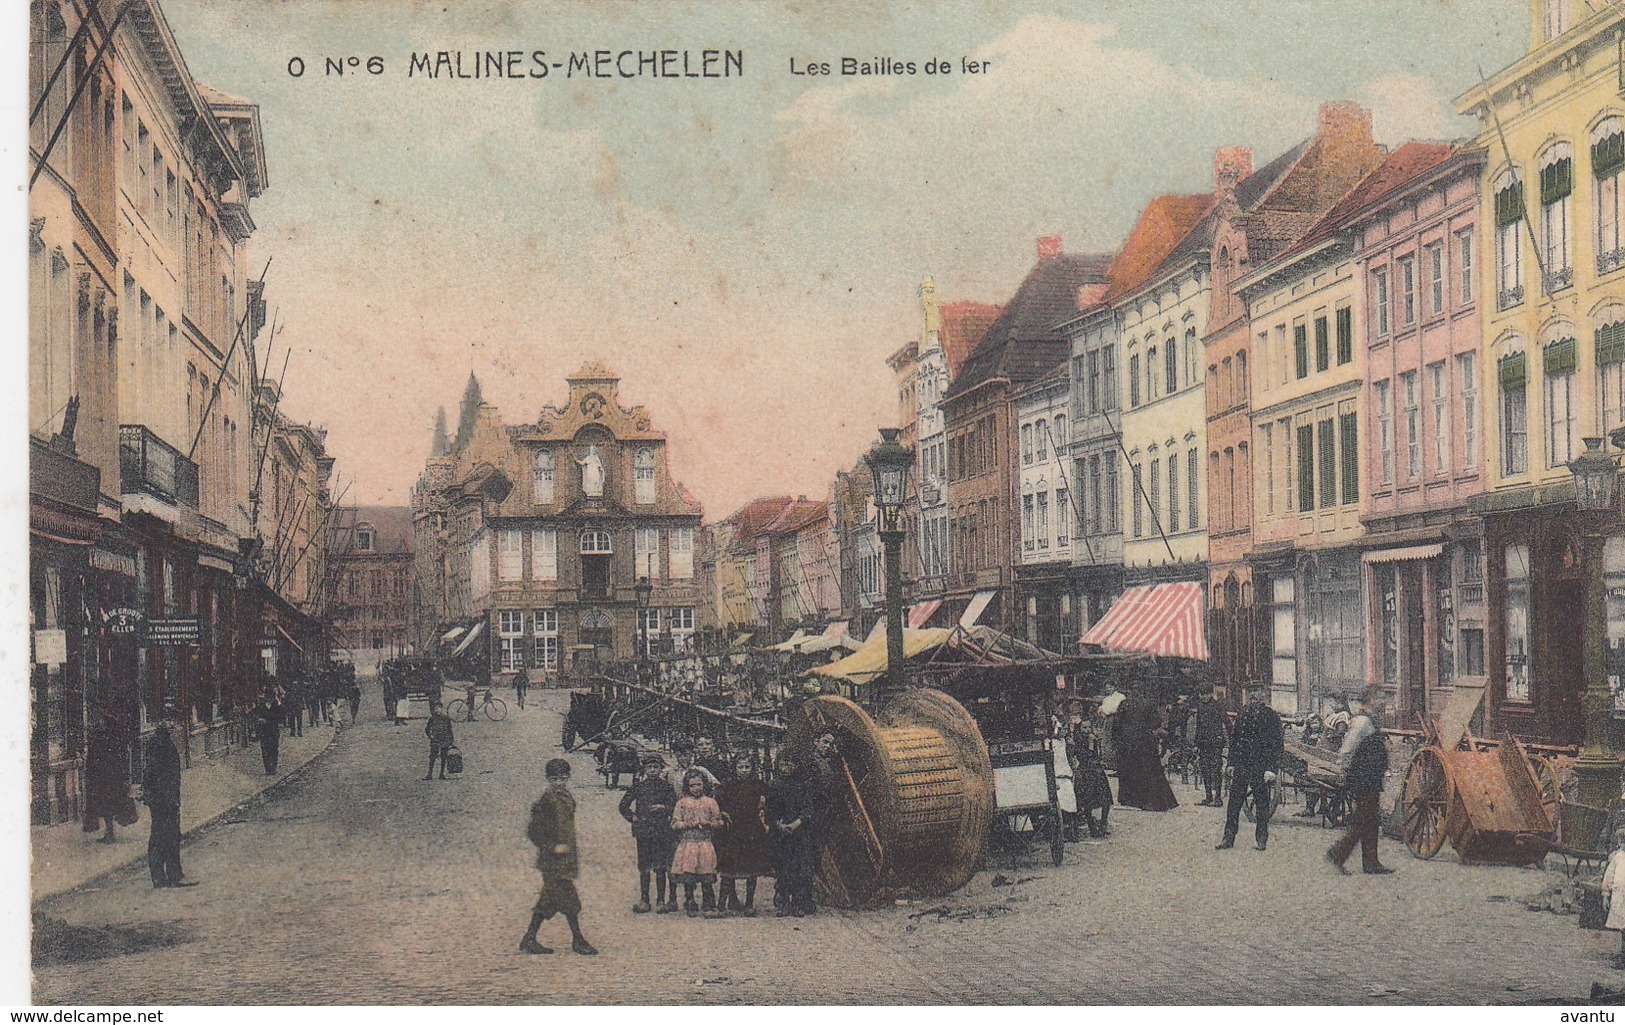 MECHELEN / BAILLES DE FER / ANIMATIE /  1913  / ZEER ZELDZAME KAART - Malines